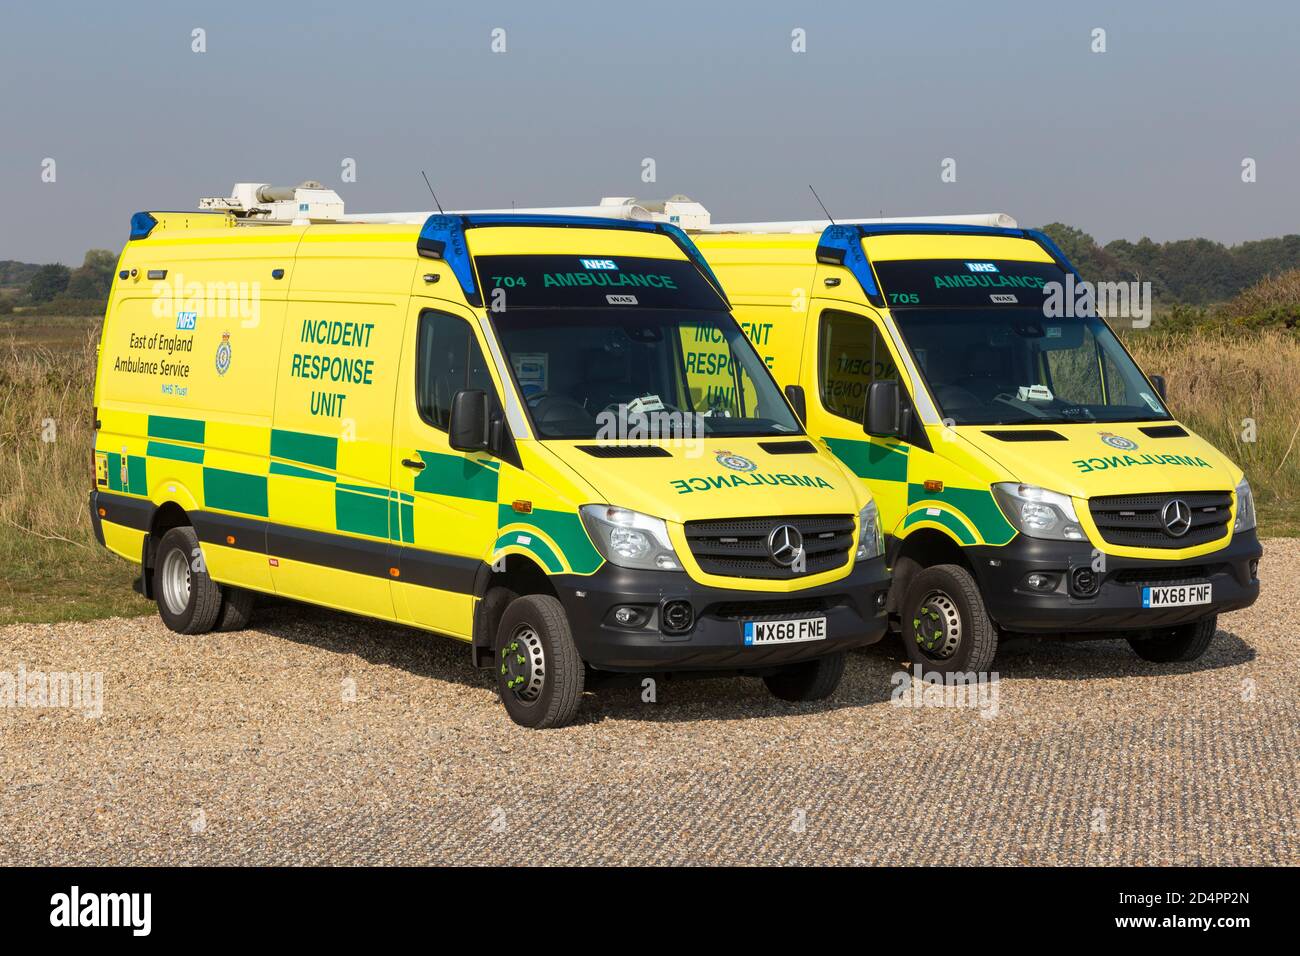 Incidence response unit ambulance. Stock Photo